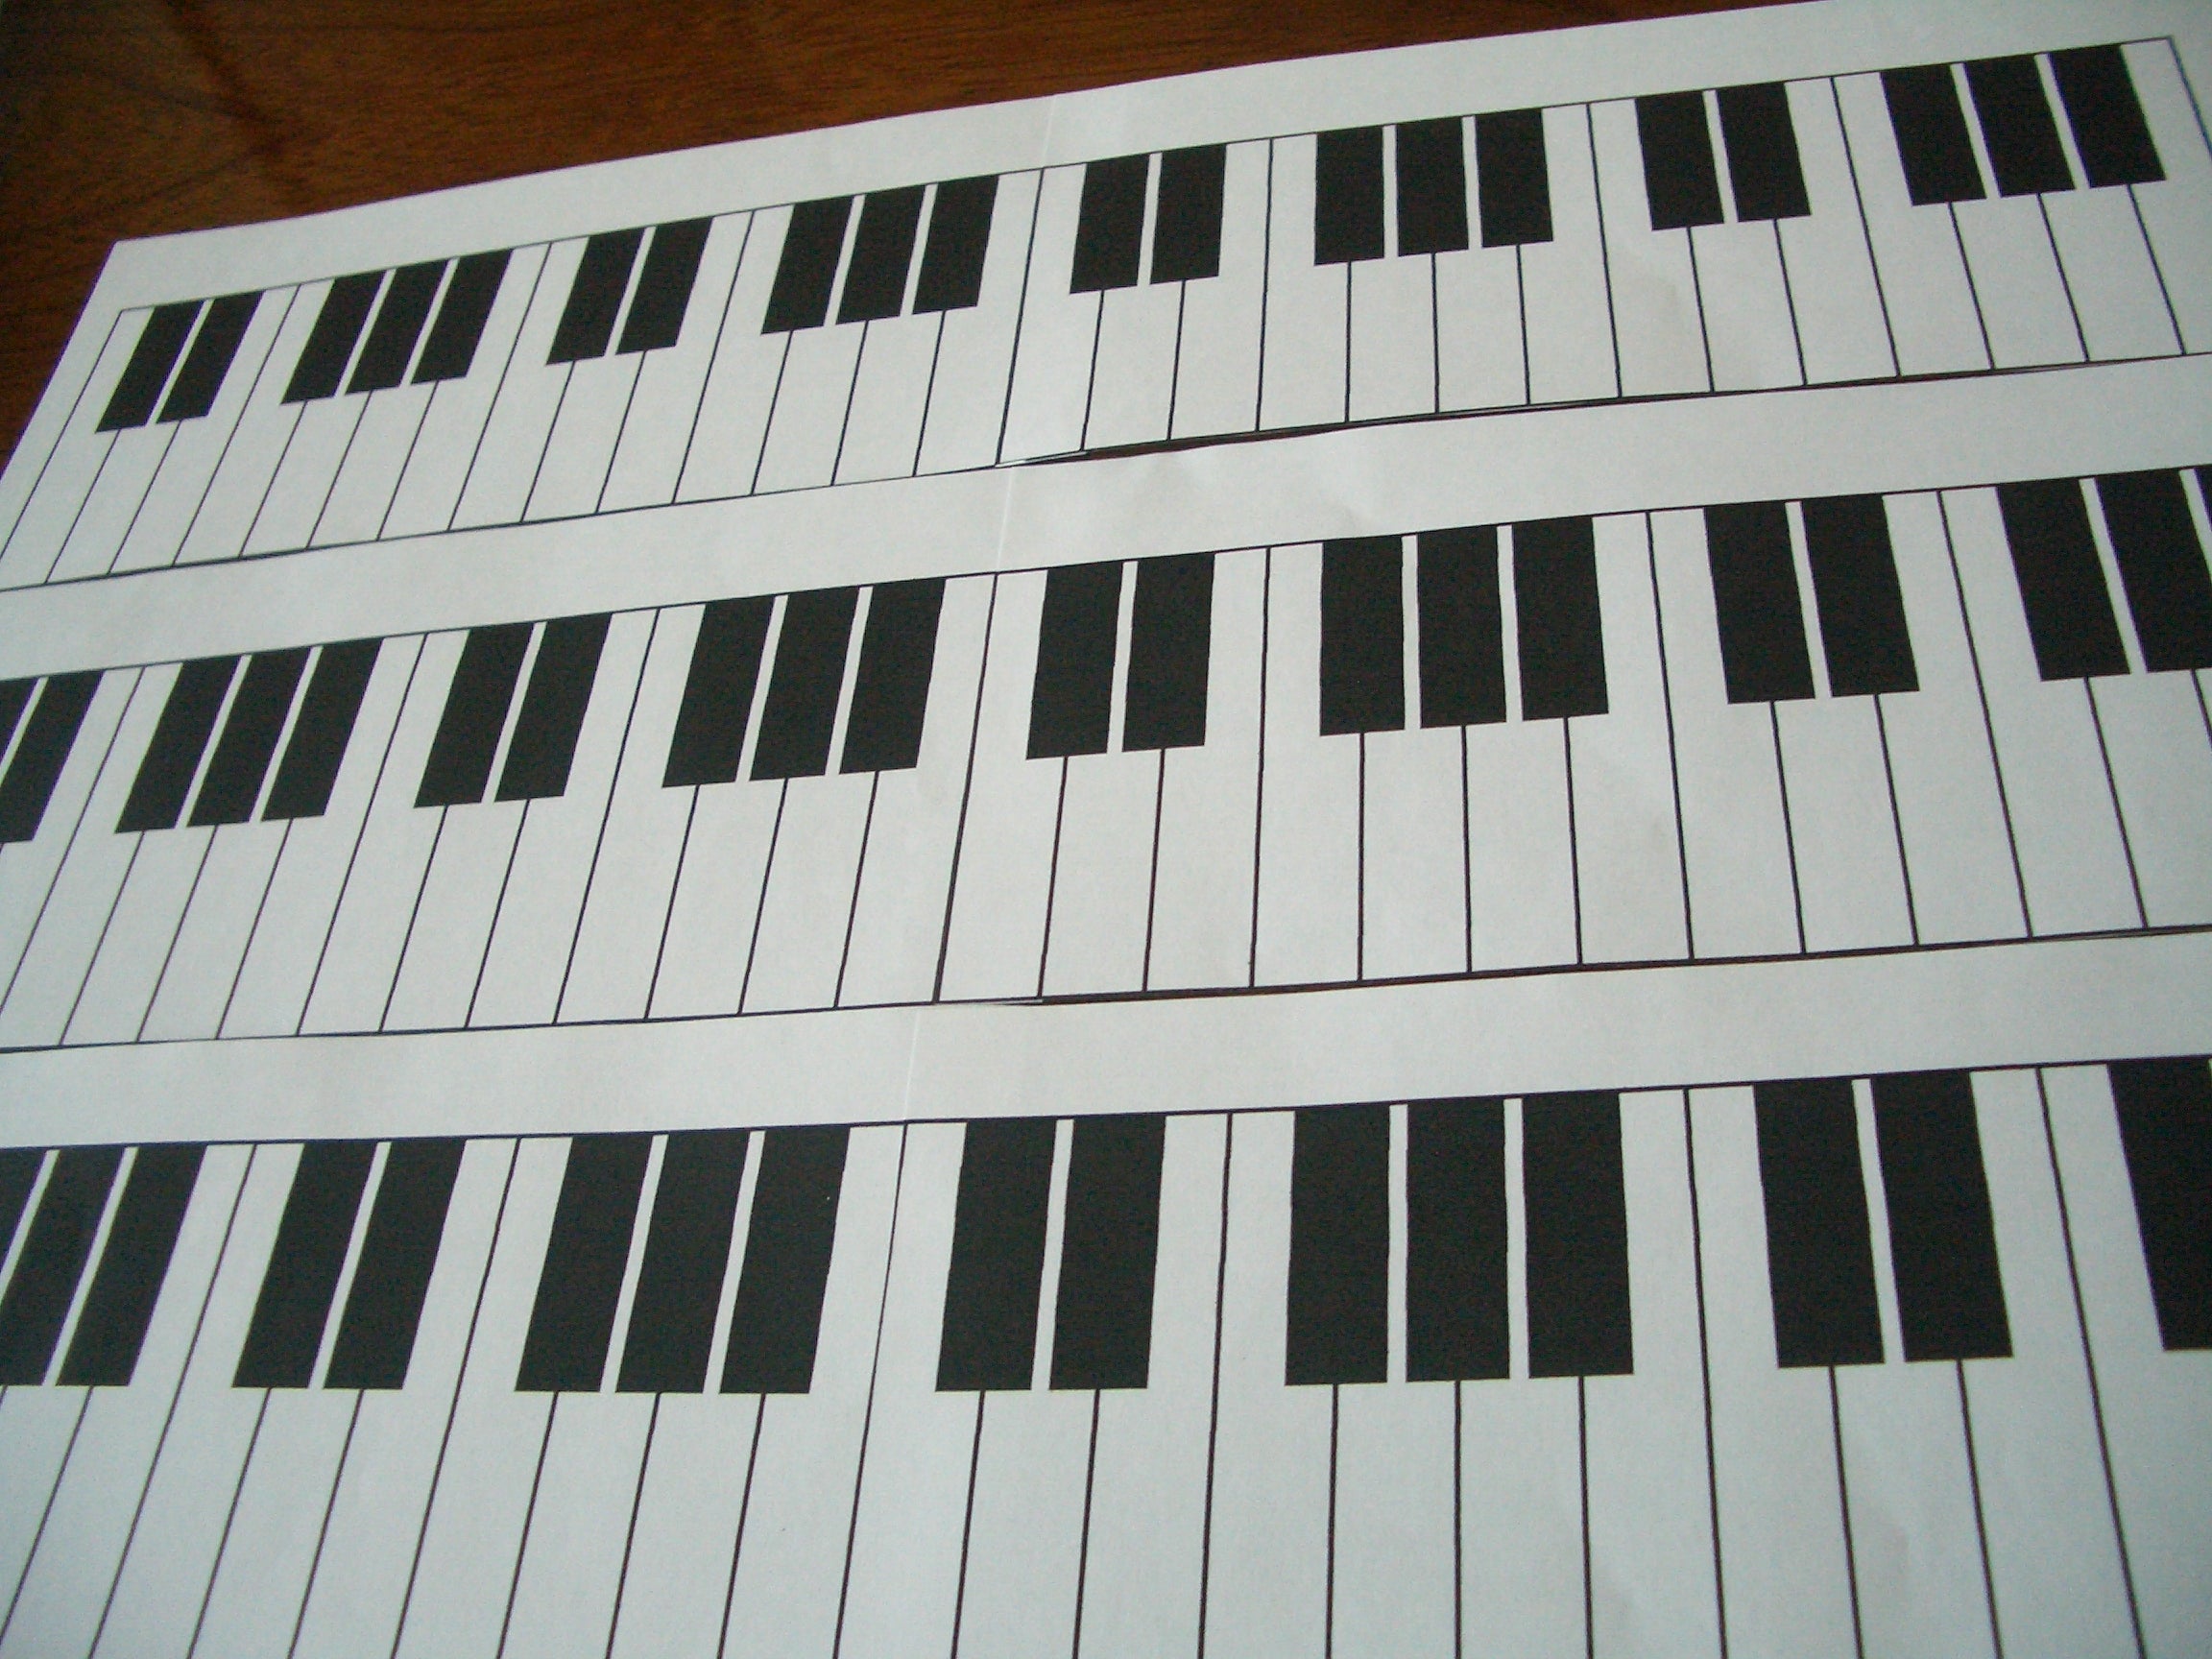 ４オクターブのピアノ鍵盤図 楽しいピアノレッスン 愛知県 名古屋